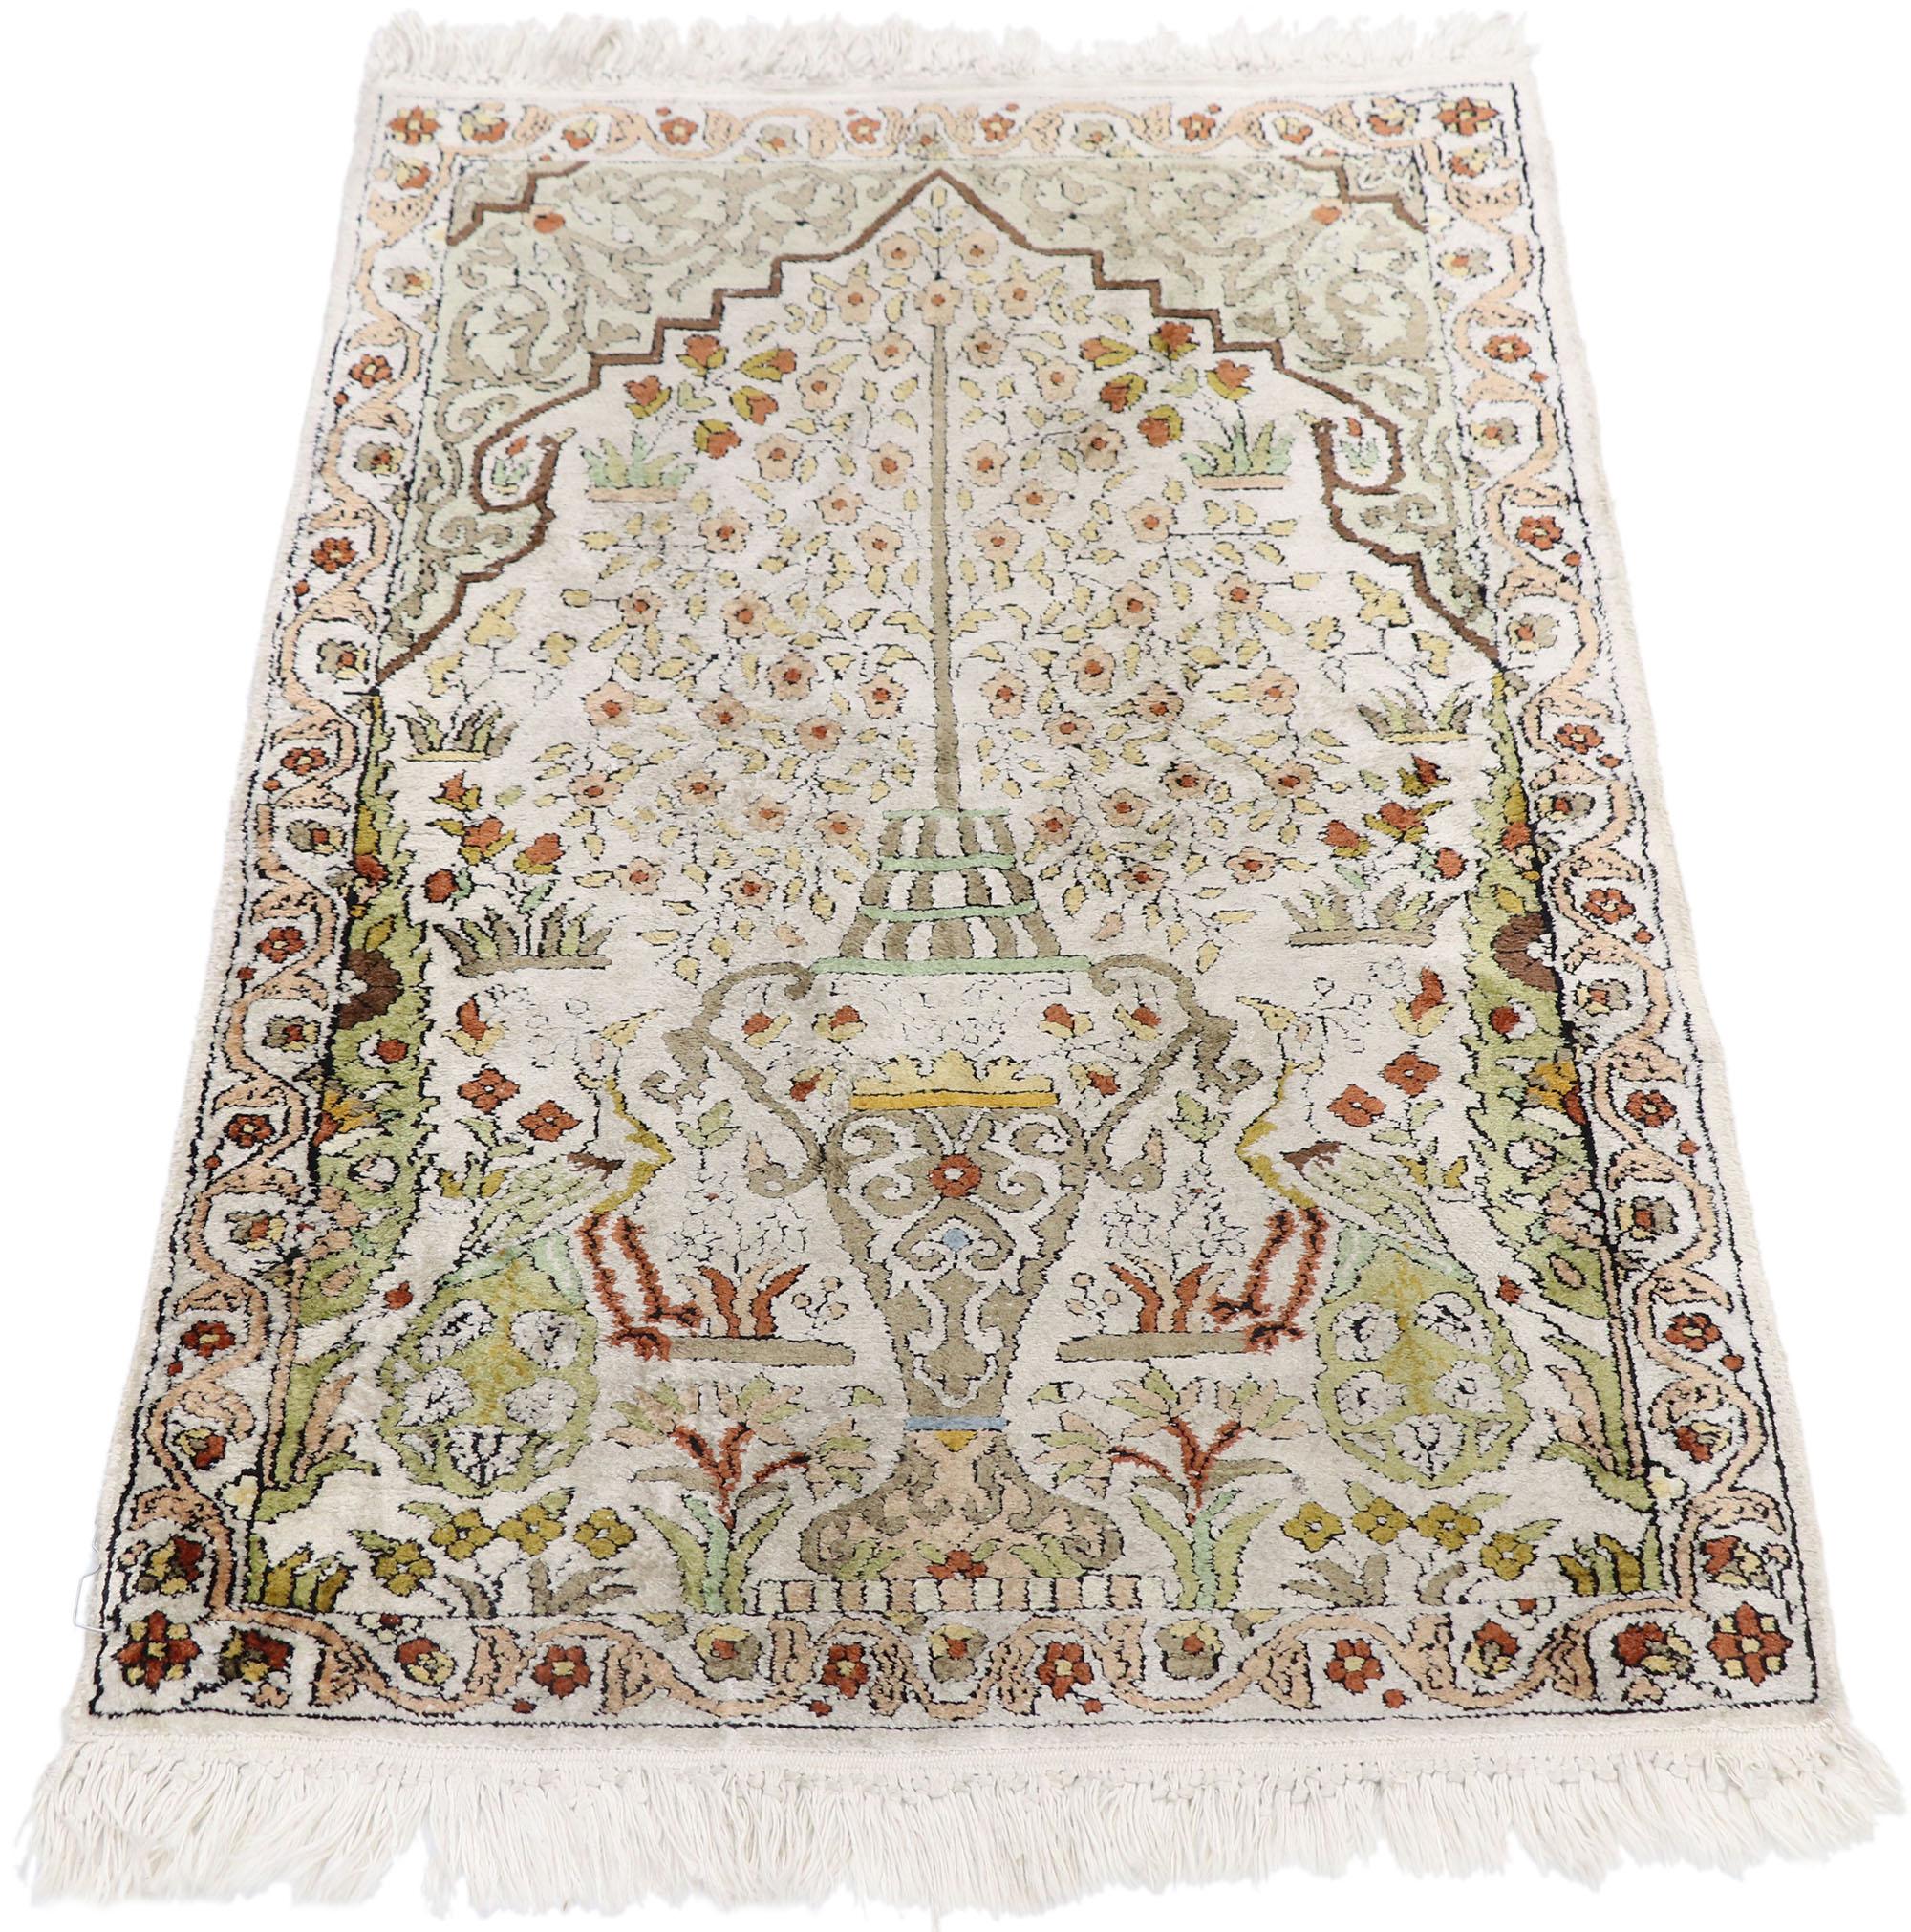 persian prayer rugs